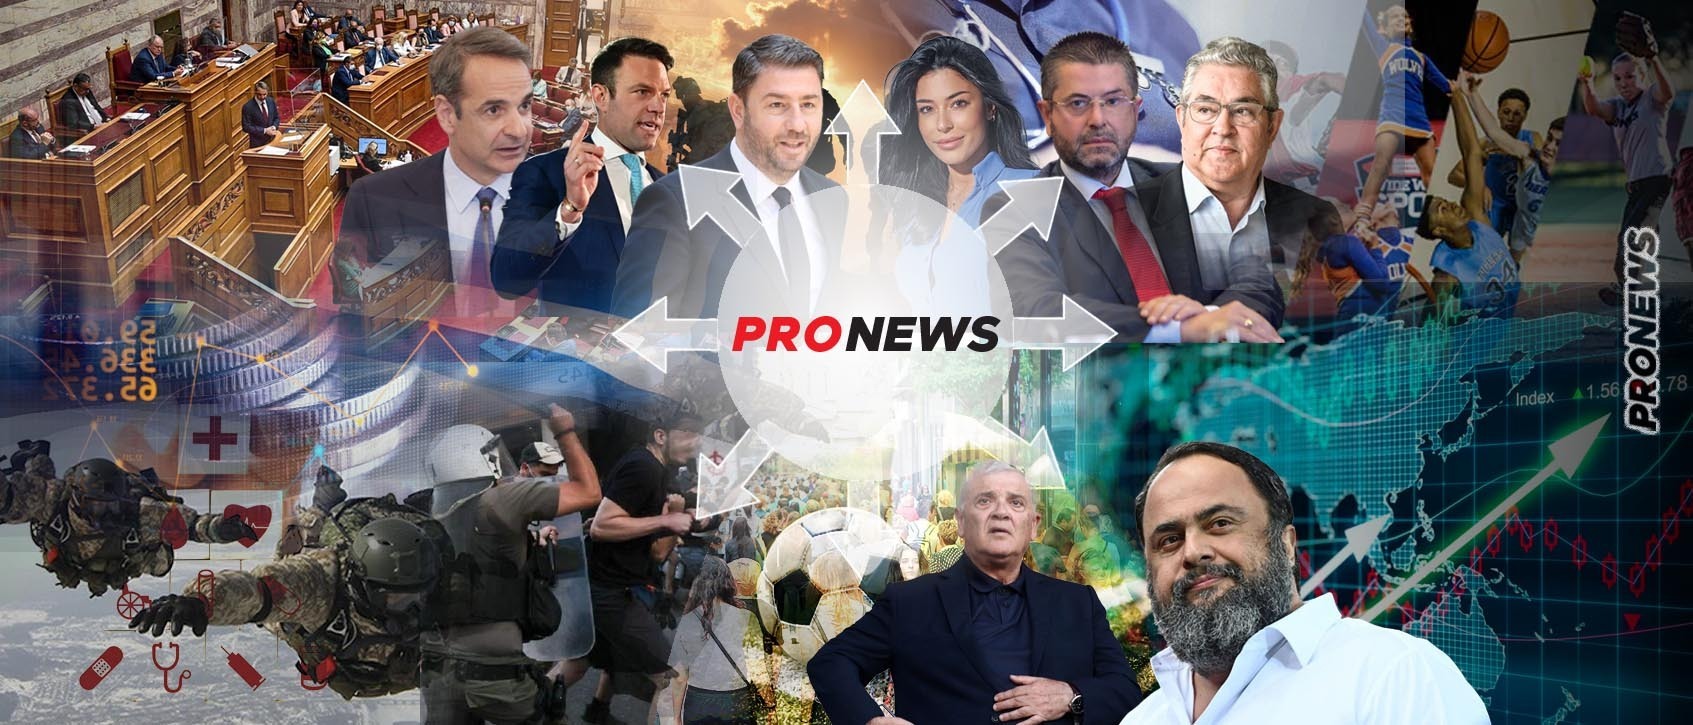 Κυριαρχία pronews.gr στην ελληνική ενημέρωση: Ένας στους τρεις Έλληνες βλέπει, ακούει και διαβάζει καθημερινά τις πλατφόρμες του pronews.gr